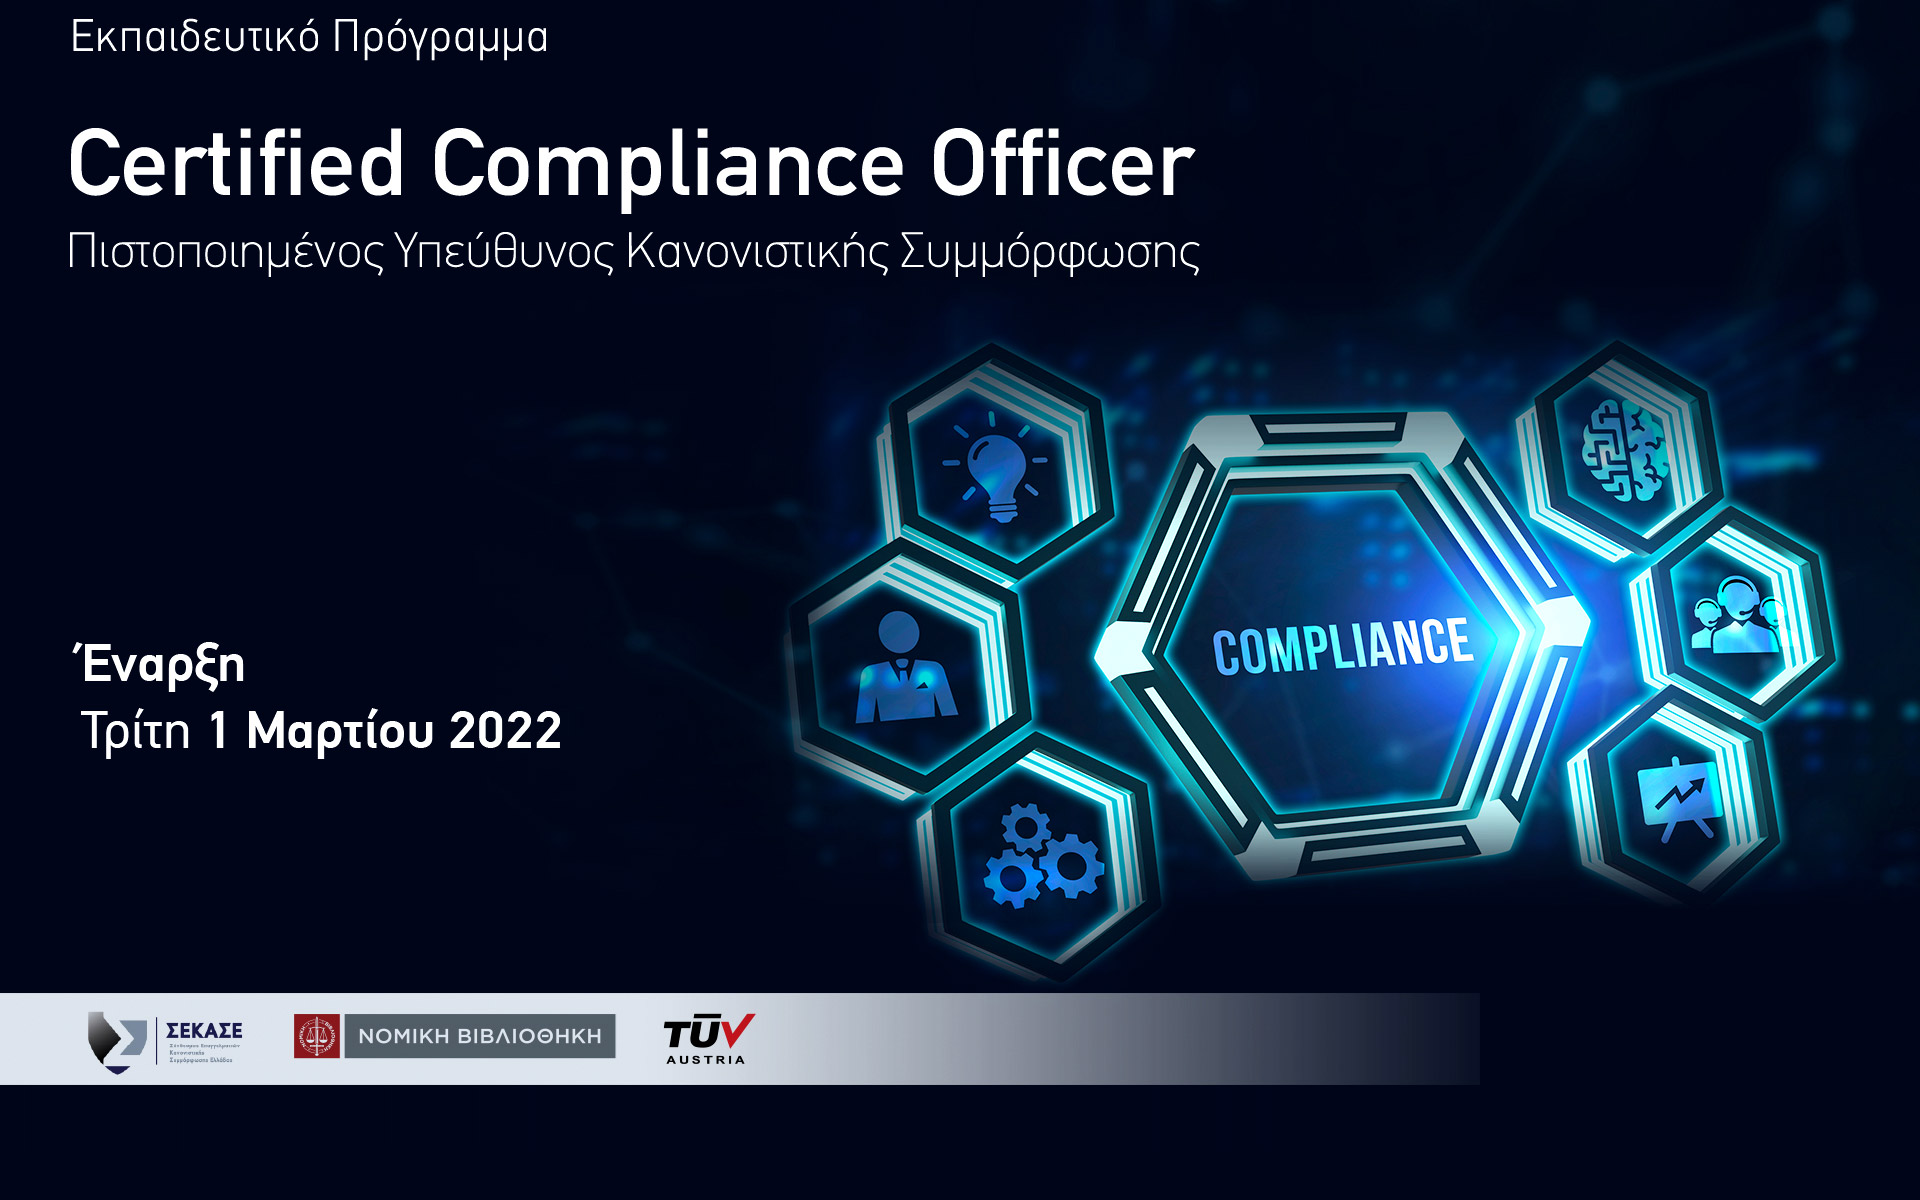 νέο-εκπαιδευτικό-πρόγραμμα-certified-compliance-officer-561723490